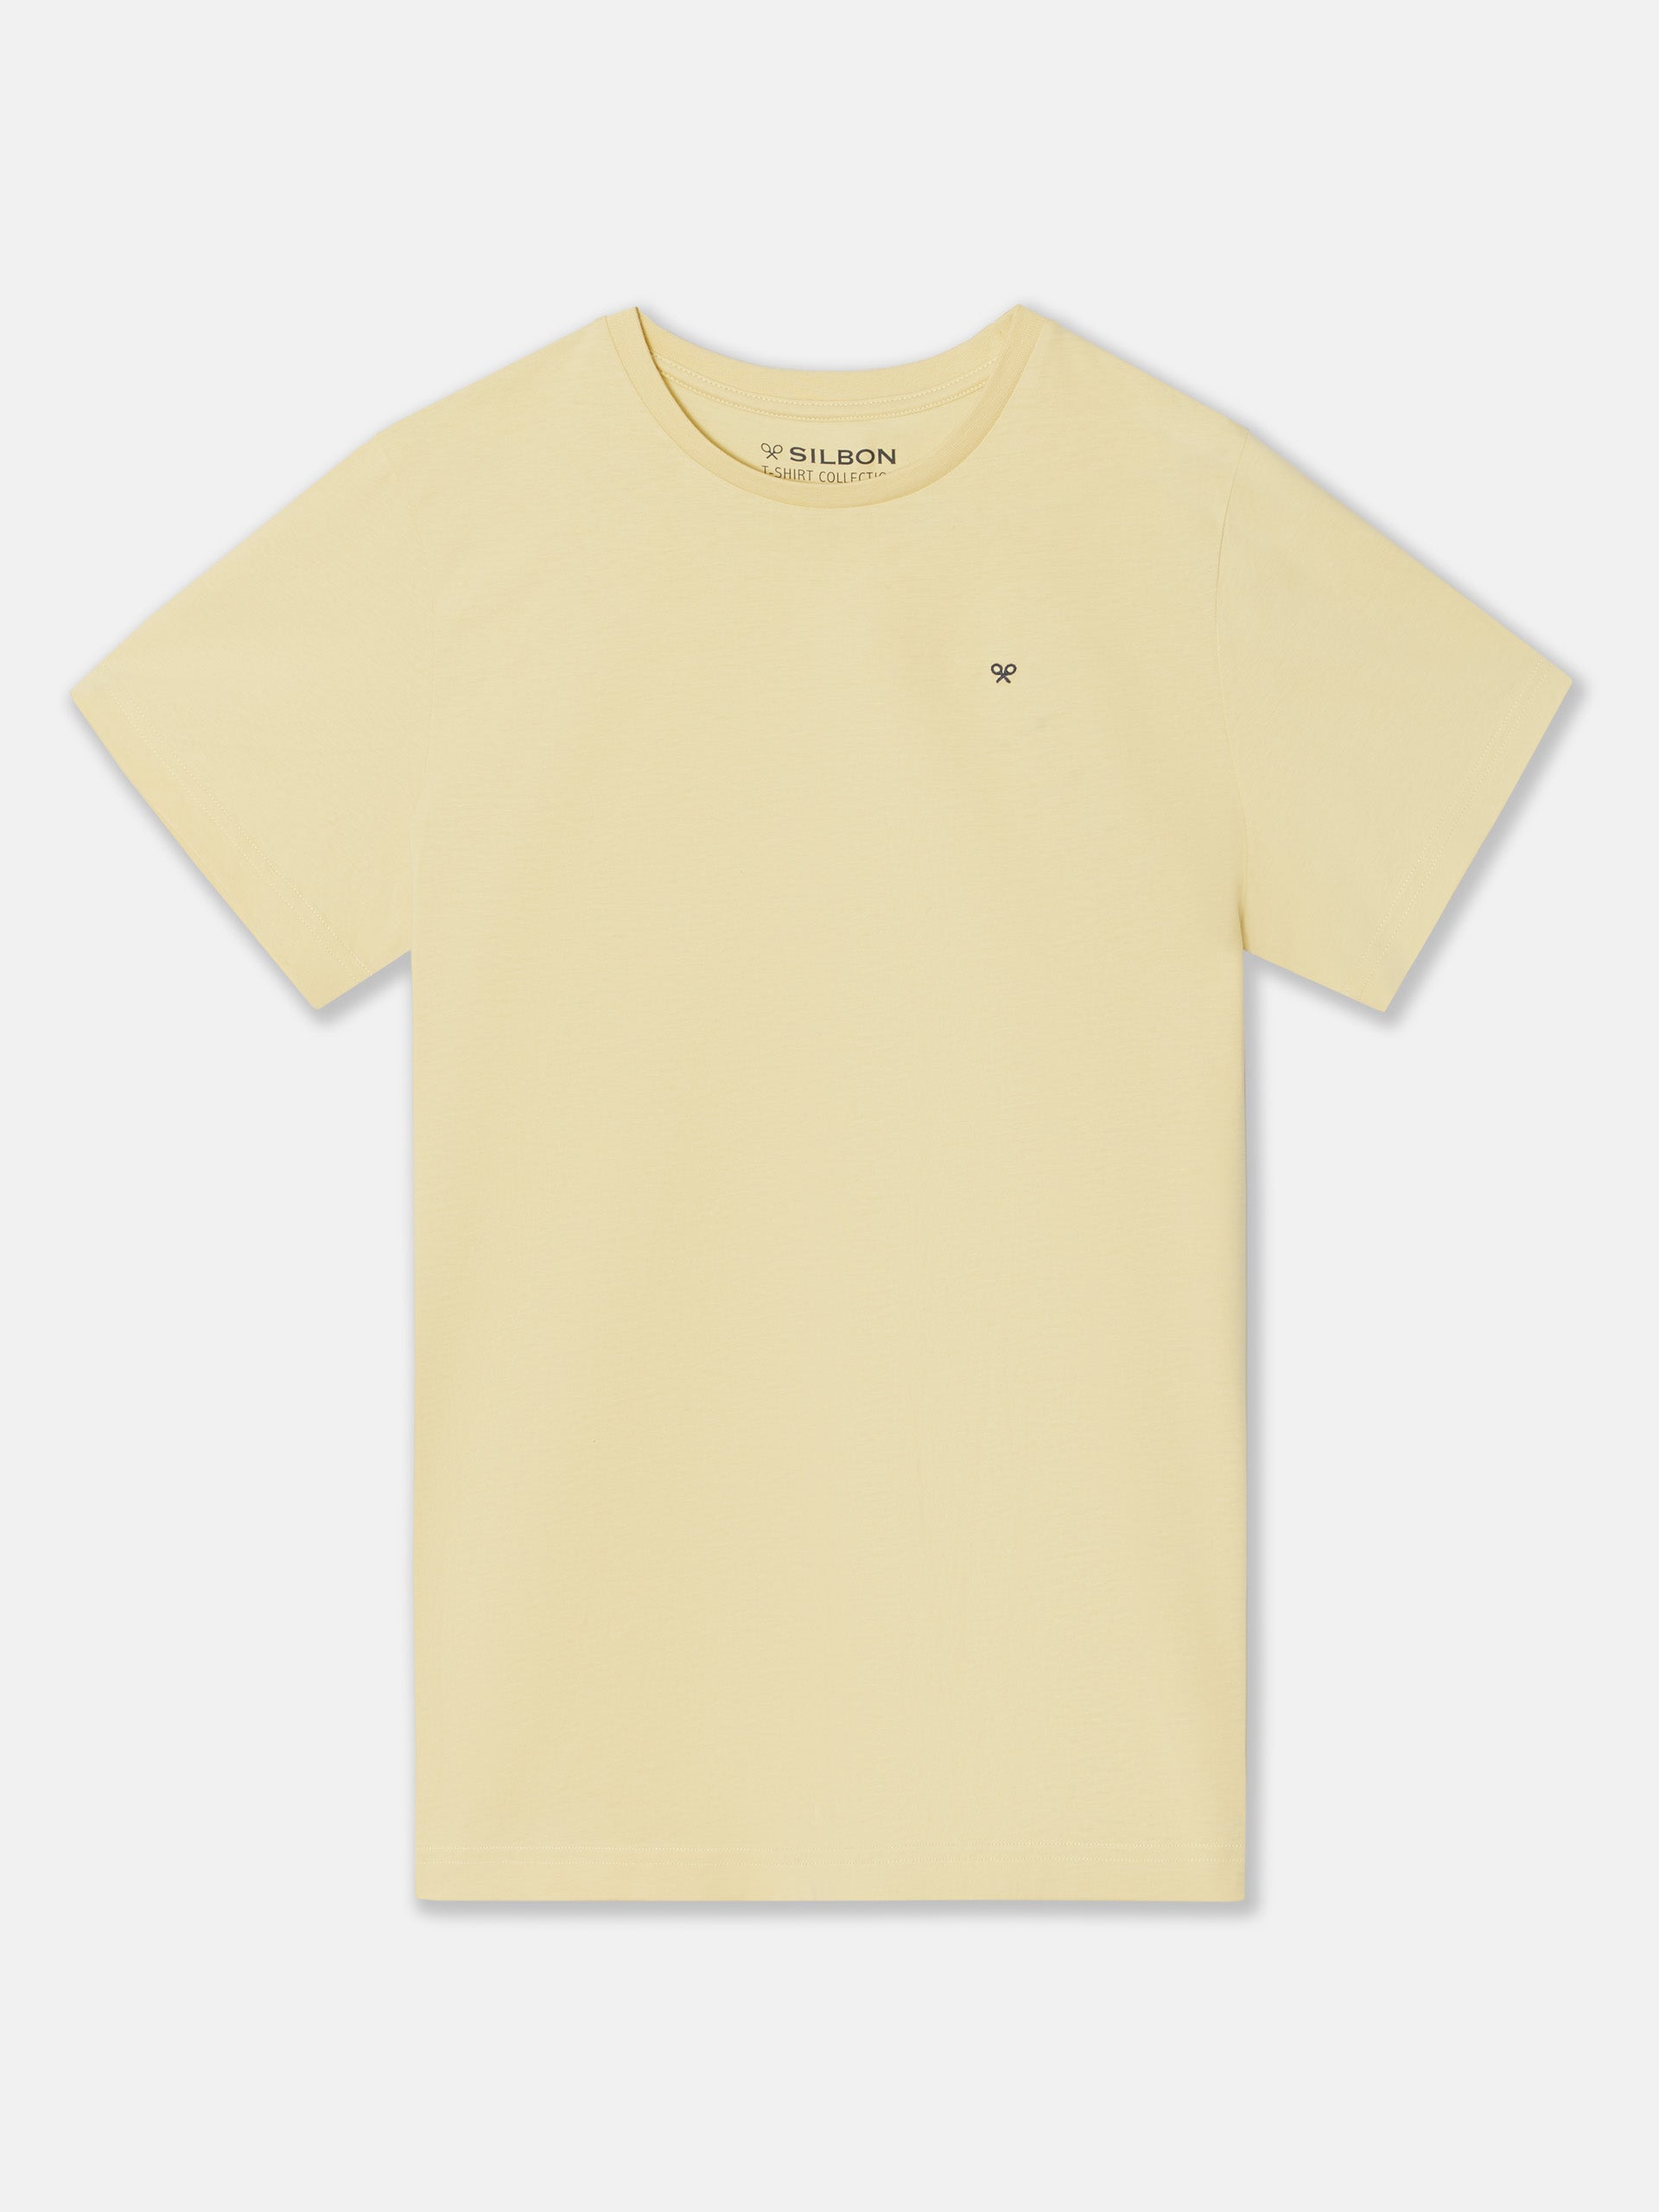 Camiseta silbon minilogo amarillo